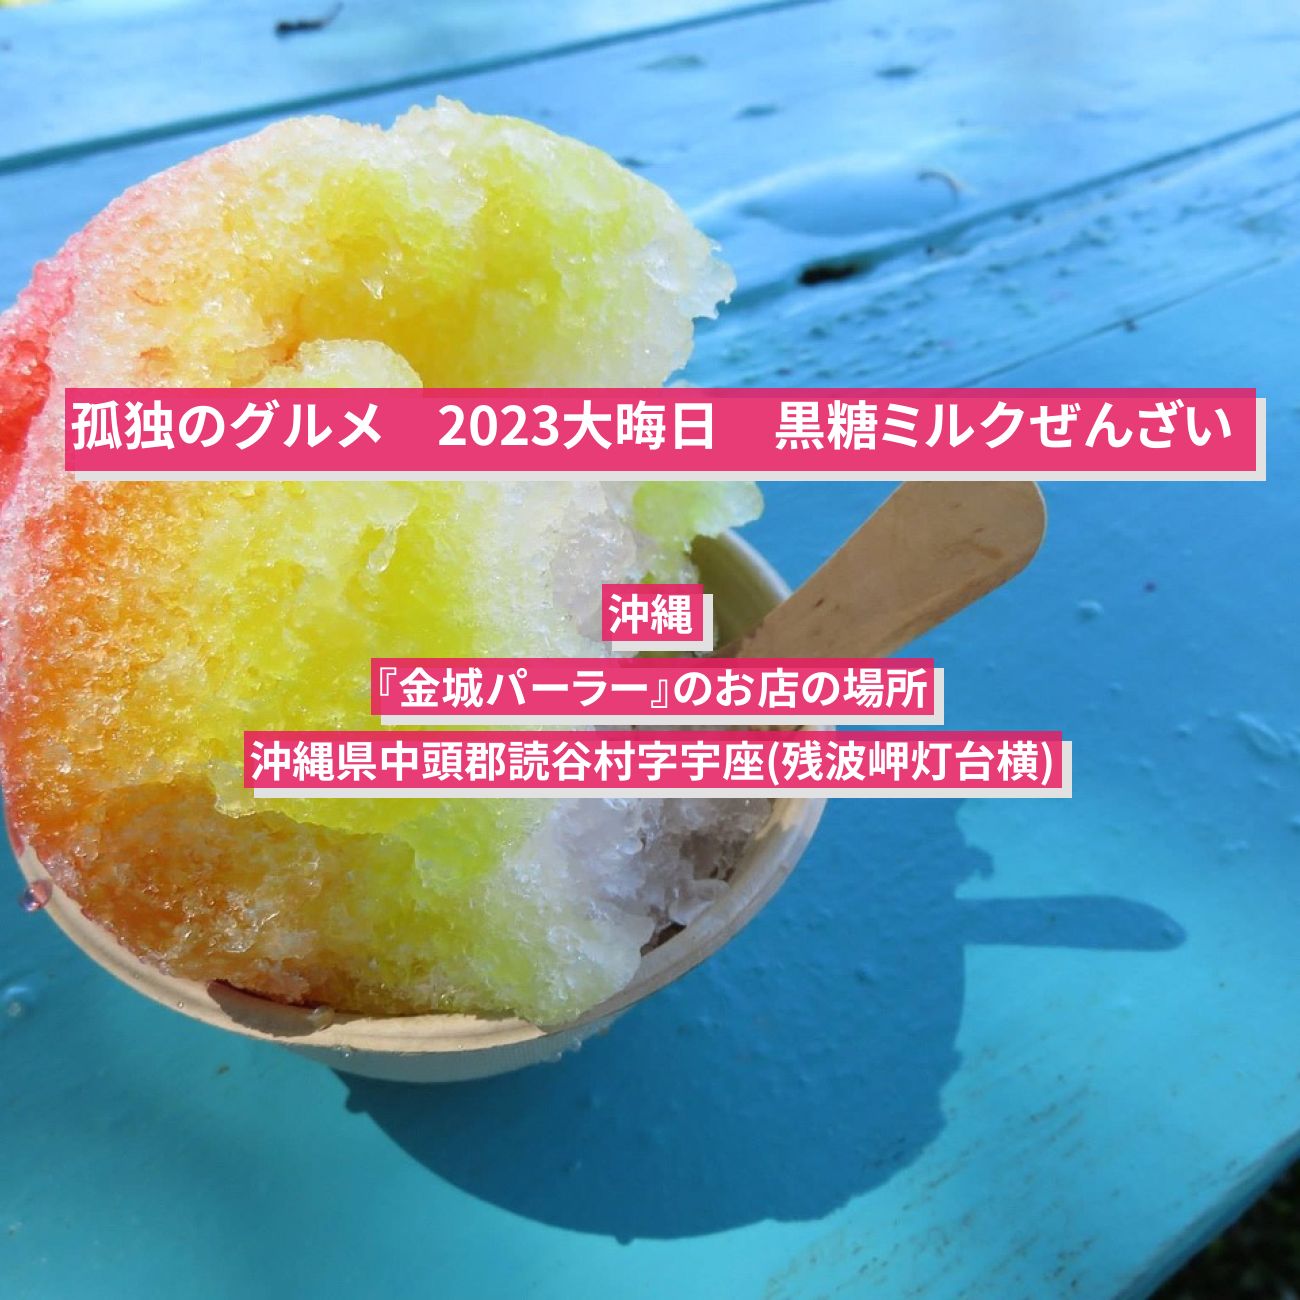 【孤独のグルメ 2023大晦日】黒糖ミルクぜんざい (かき氷) 沖縄『金城パーラー』のお店の場所